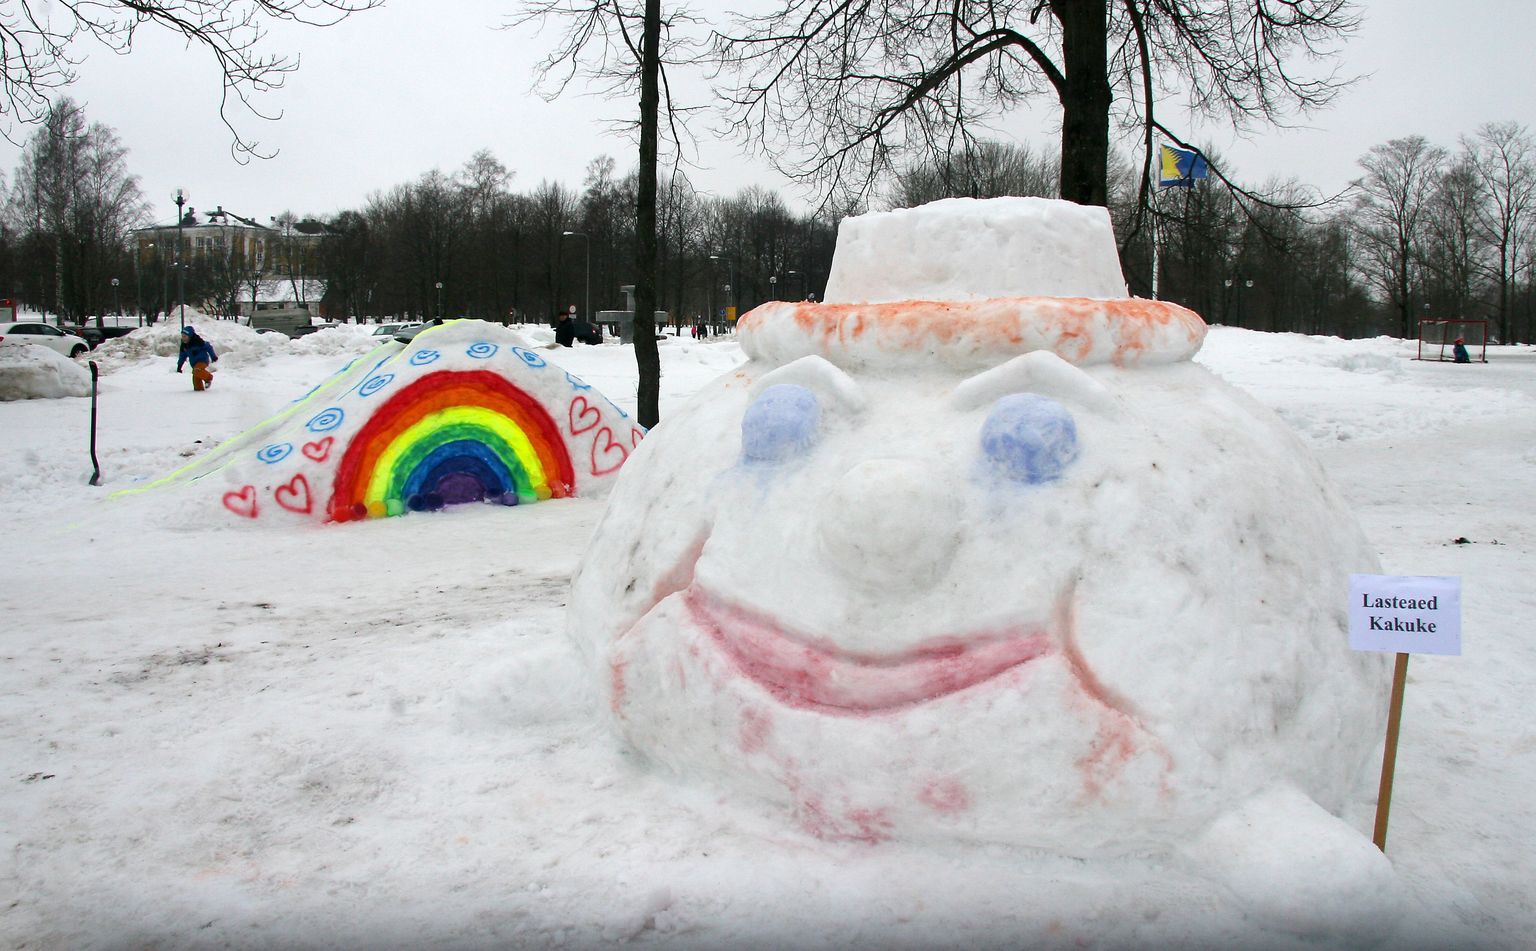 Снежные фигуры недолговечны, но процесс увлекательный - в 2019 году возле Кохтла-Ярвеского центра культуры горожане создали целый городок.